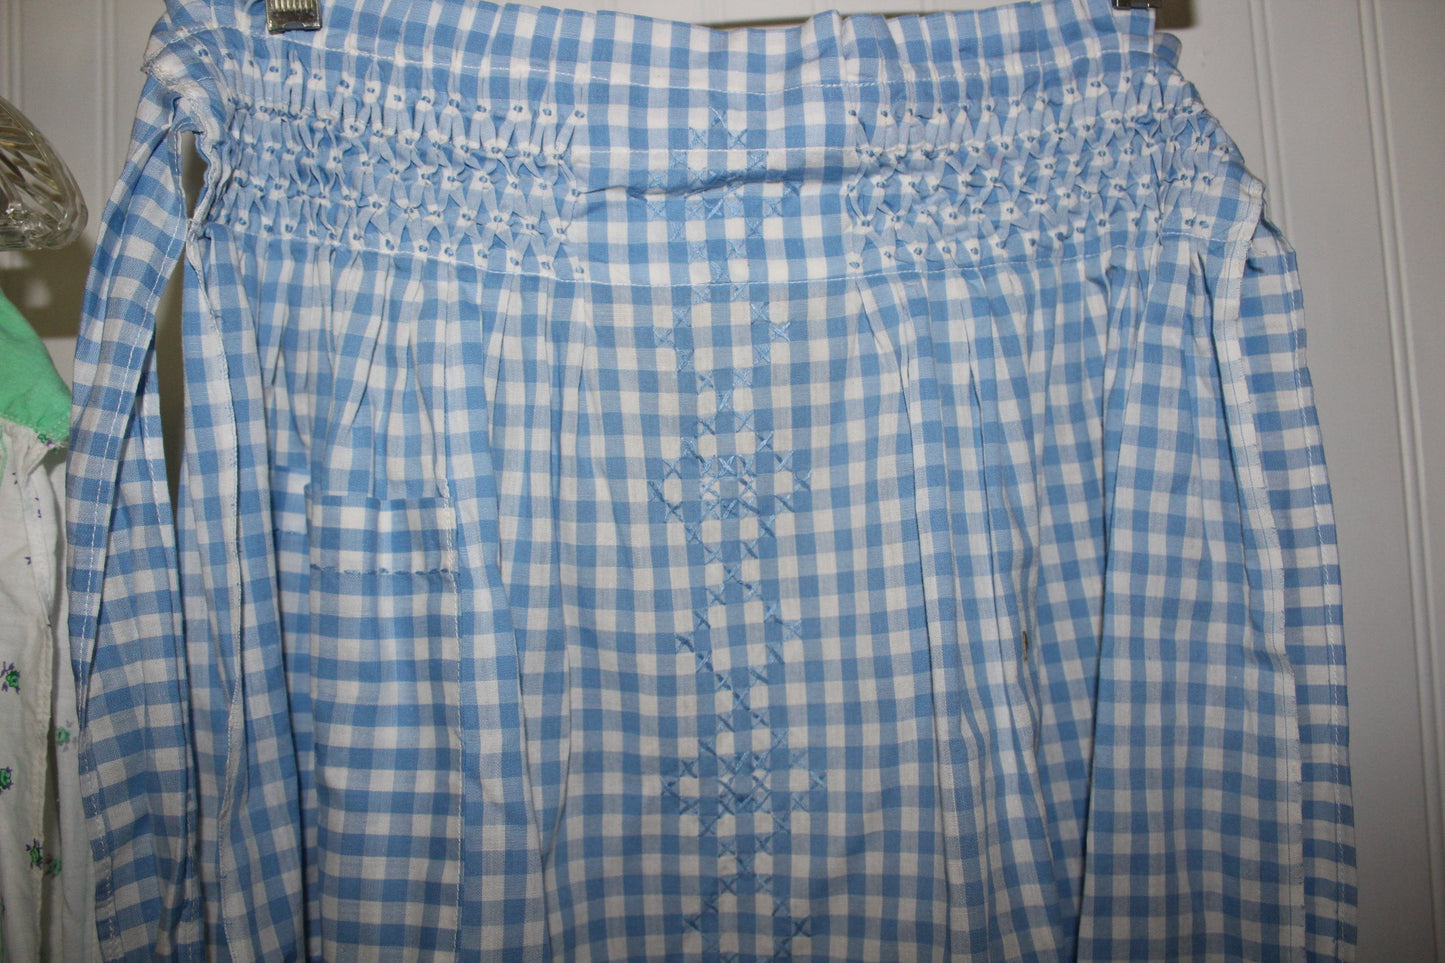 Kitchen Aprons 4 Vintage 1940 60s Cotton Smocked Rickrack Wear or Pattern Use cross stitch